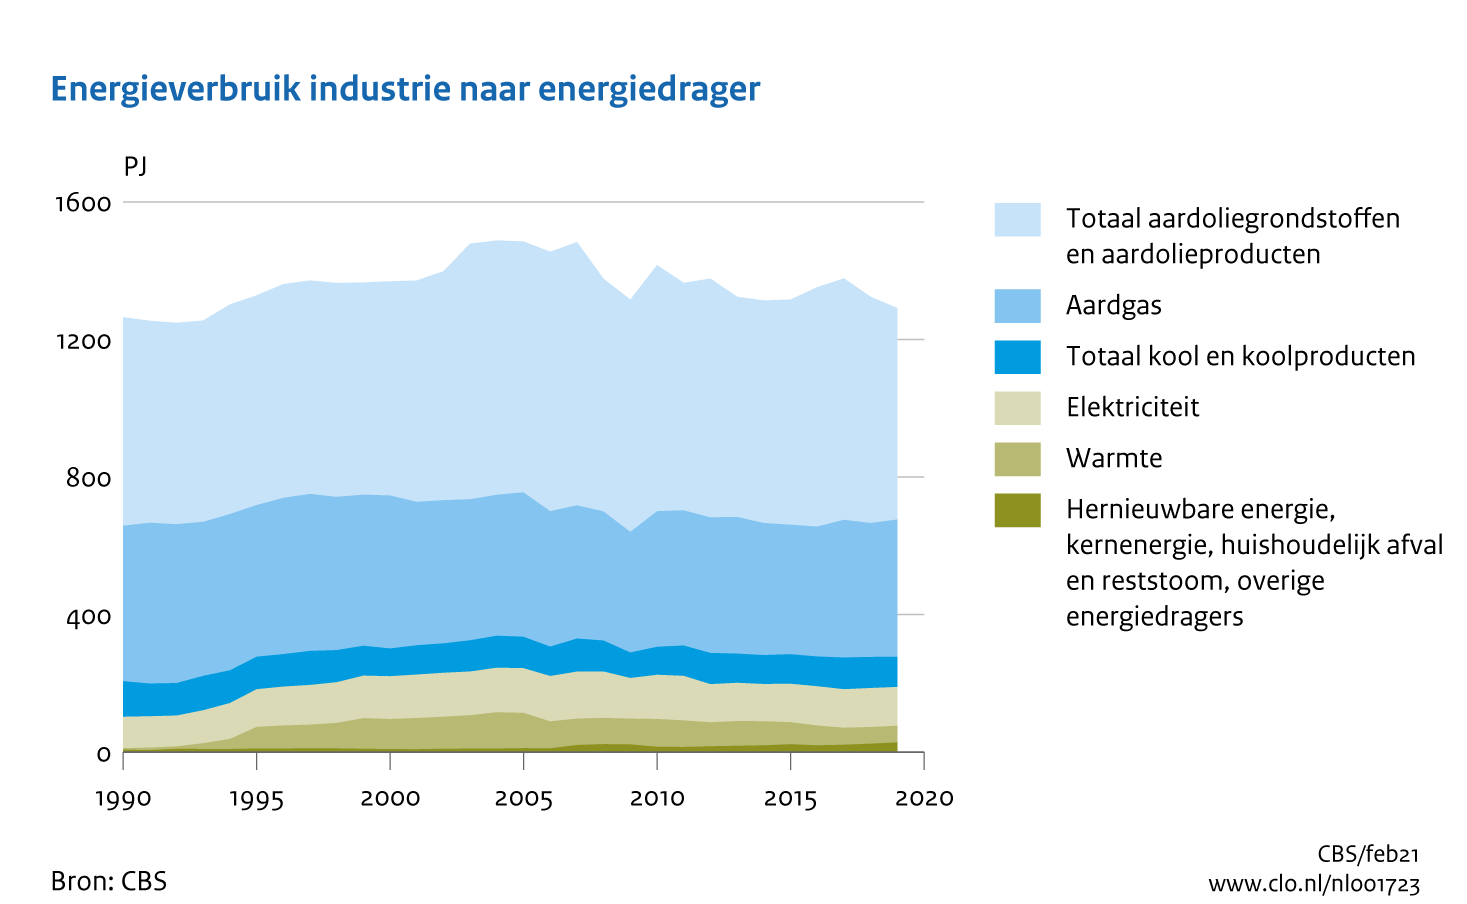 Figuur Energieverbruik industrie naar energiedrager 1990-2019. In de rest van de tekst wordt deze figuur uitgebreider uitgelegd.